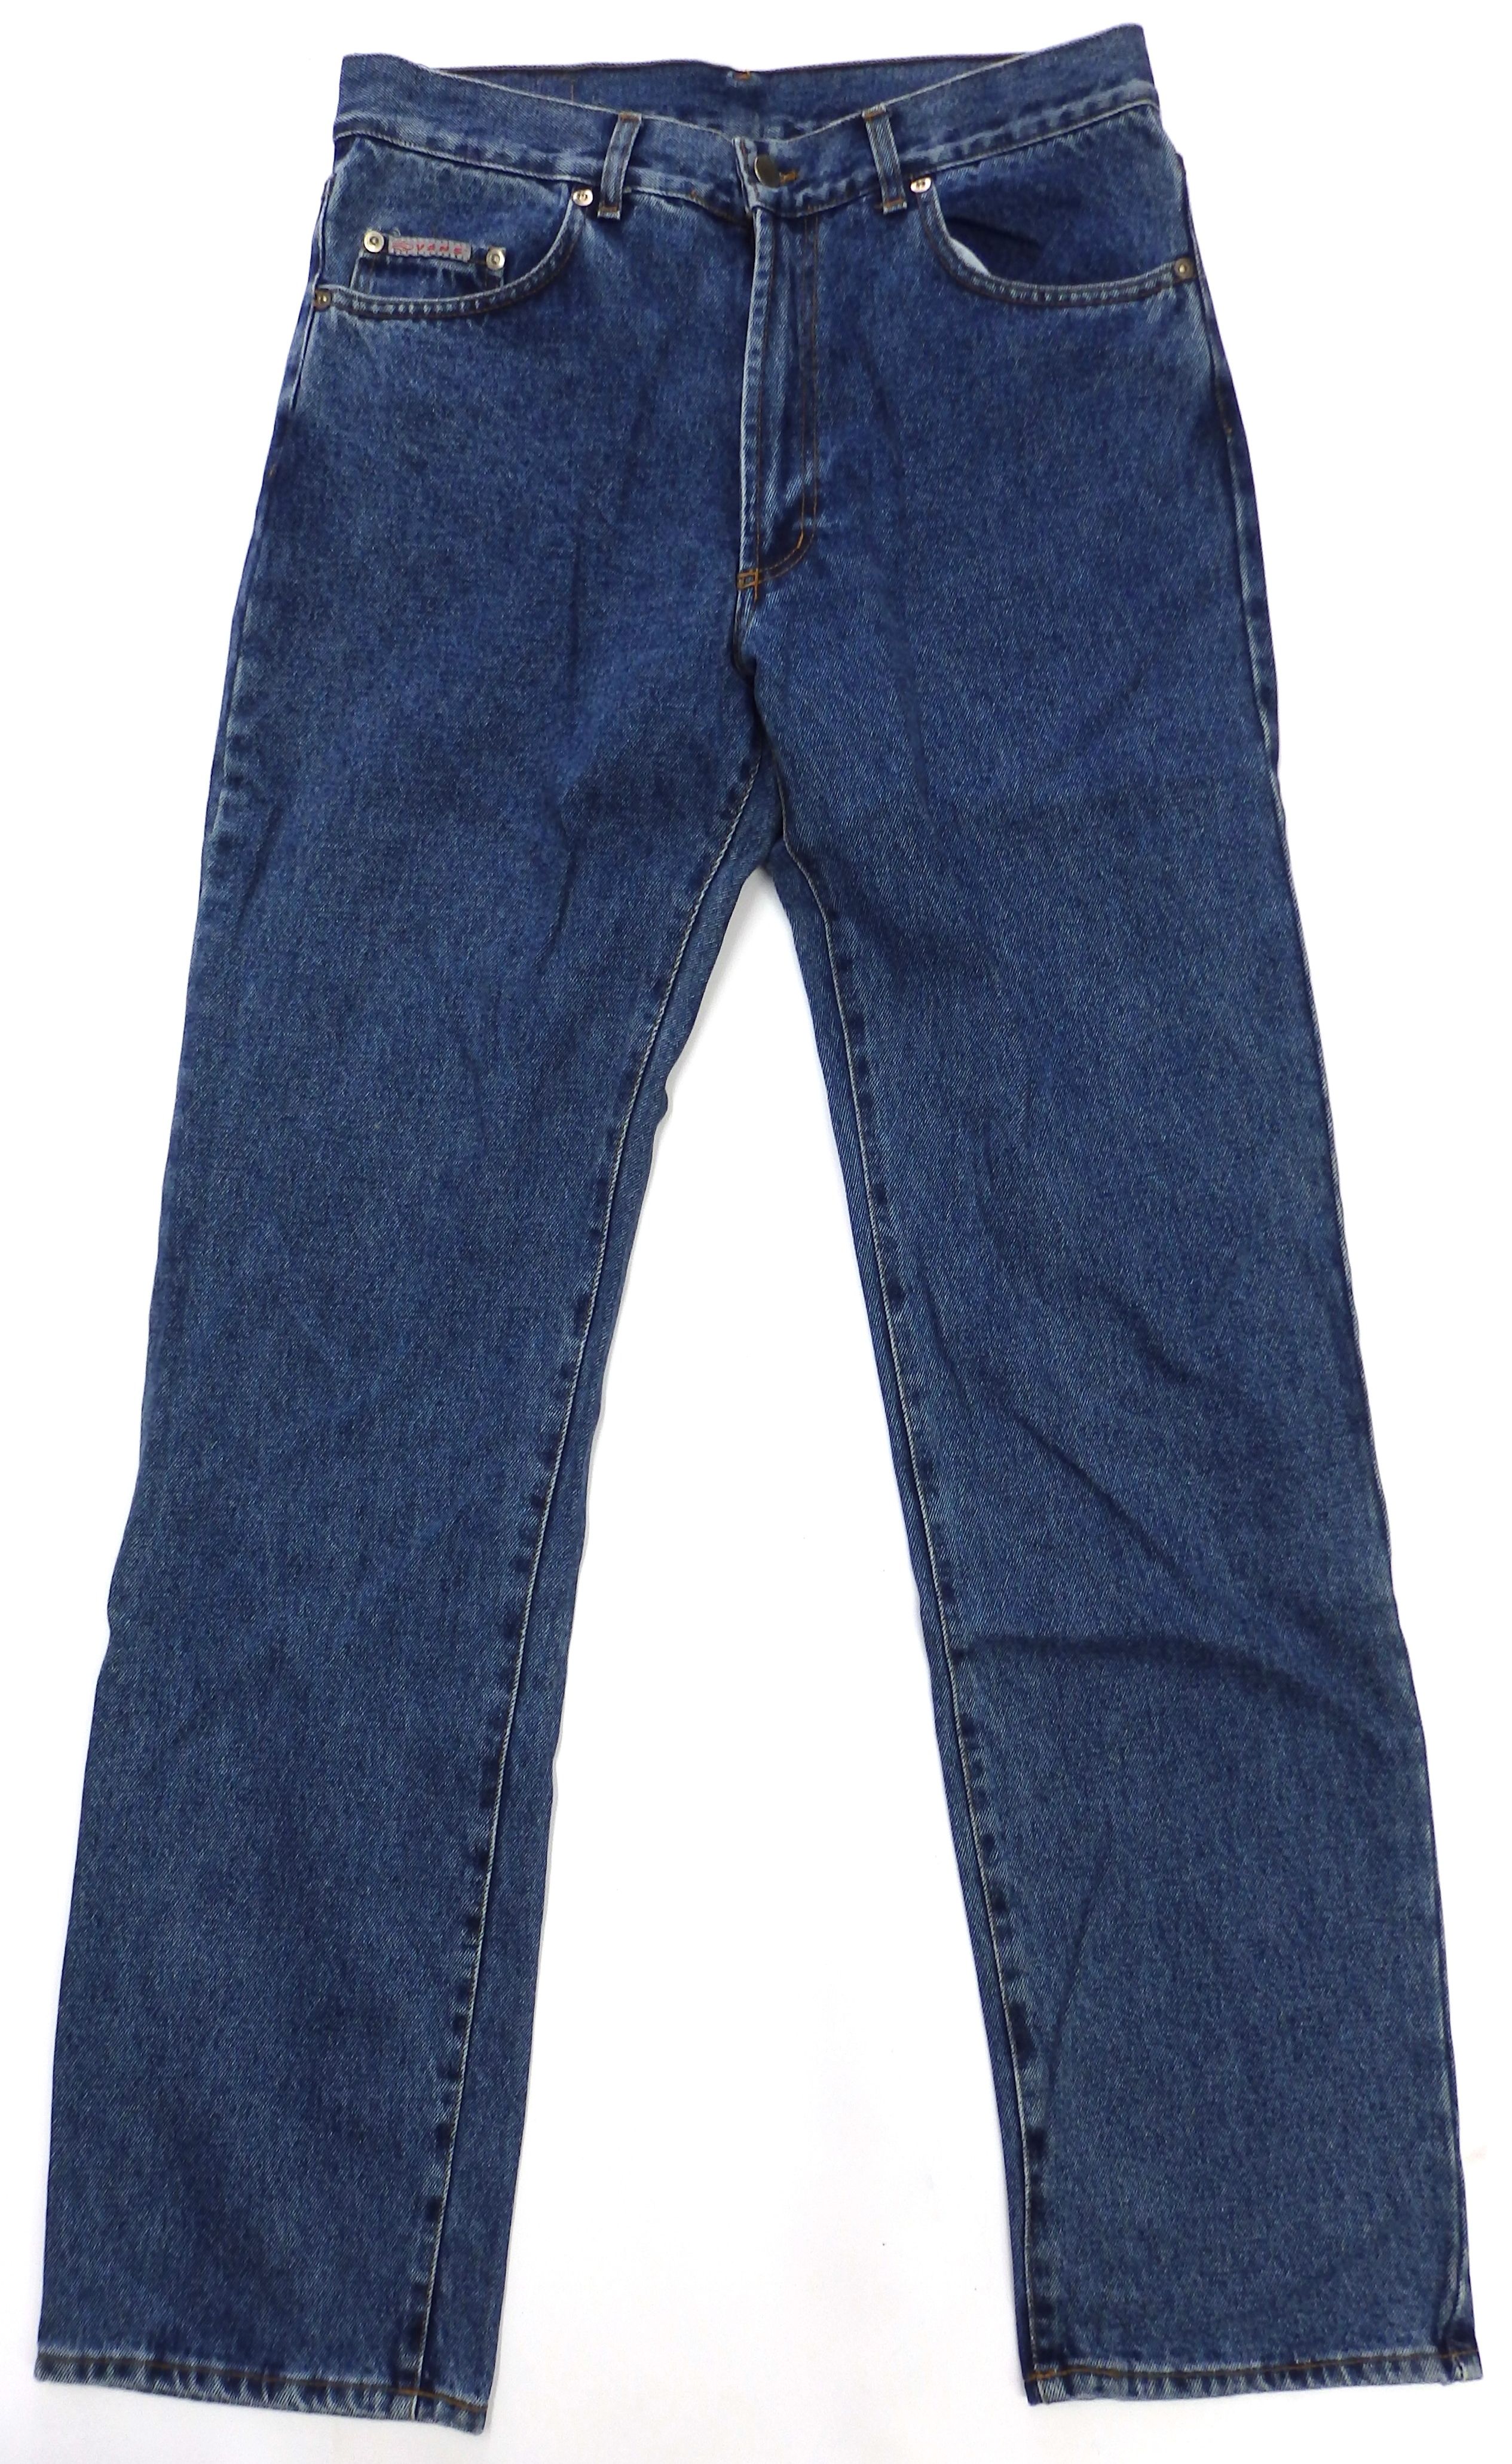 pánské džíny VANS Classic cut basic jeans